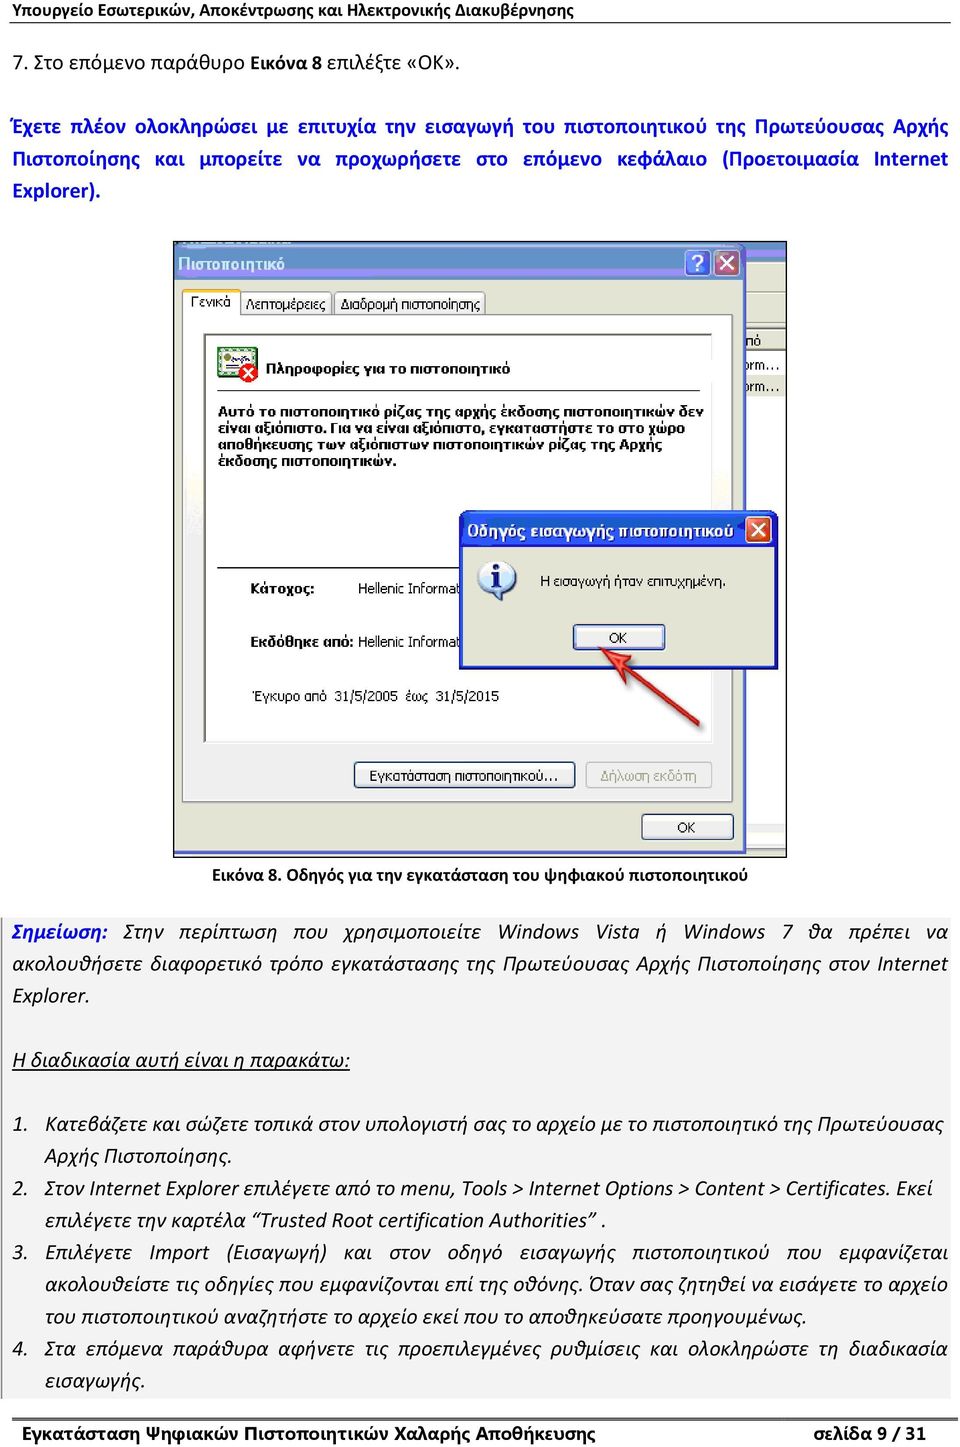 Οδηγός για την εγκατάσταση του ψηφιακού πιστοποιητικού Σημείωση: Στην περίπτωση που χρησιμοποιείτε Windows Vista ή Windows 7 θα πρέπει να ακολουθήσετε διαφορετικό τρόπο εγκατάστασης της Πρωτεύουσας